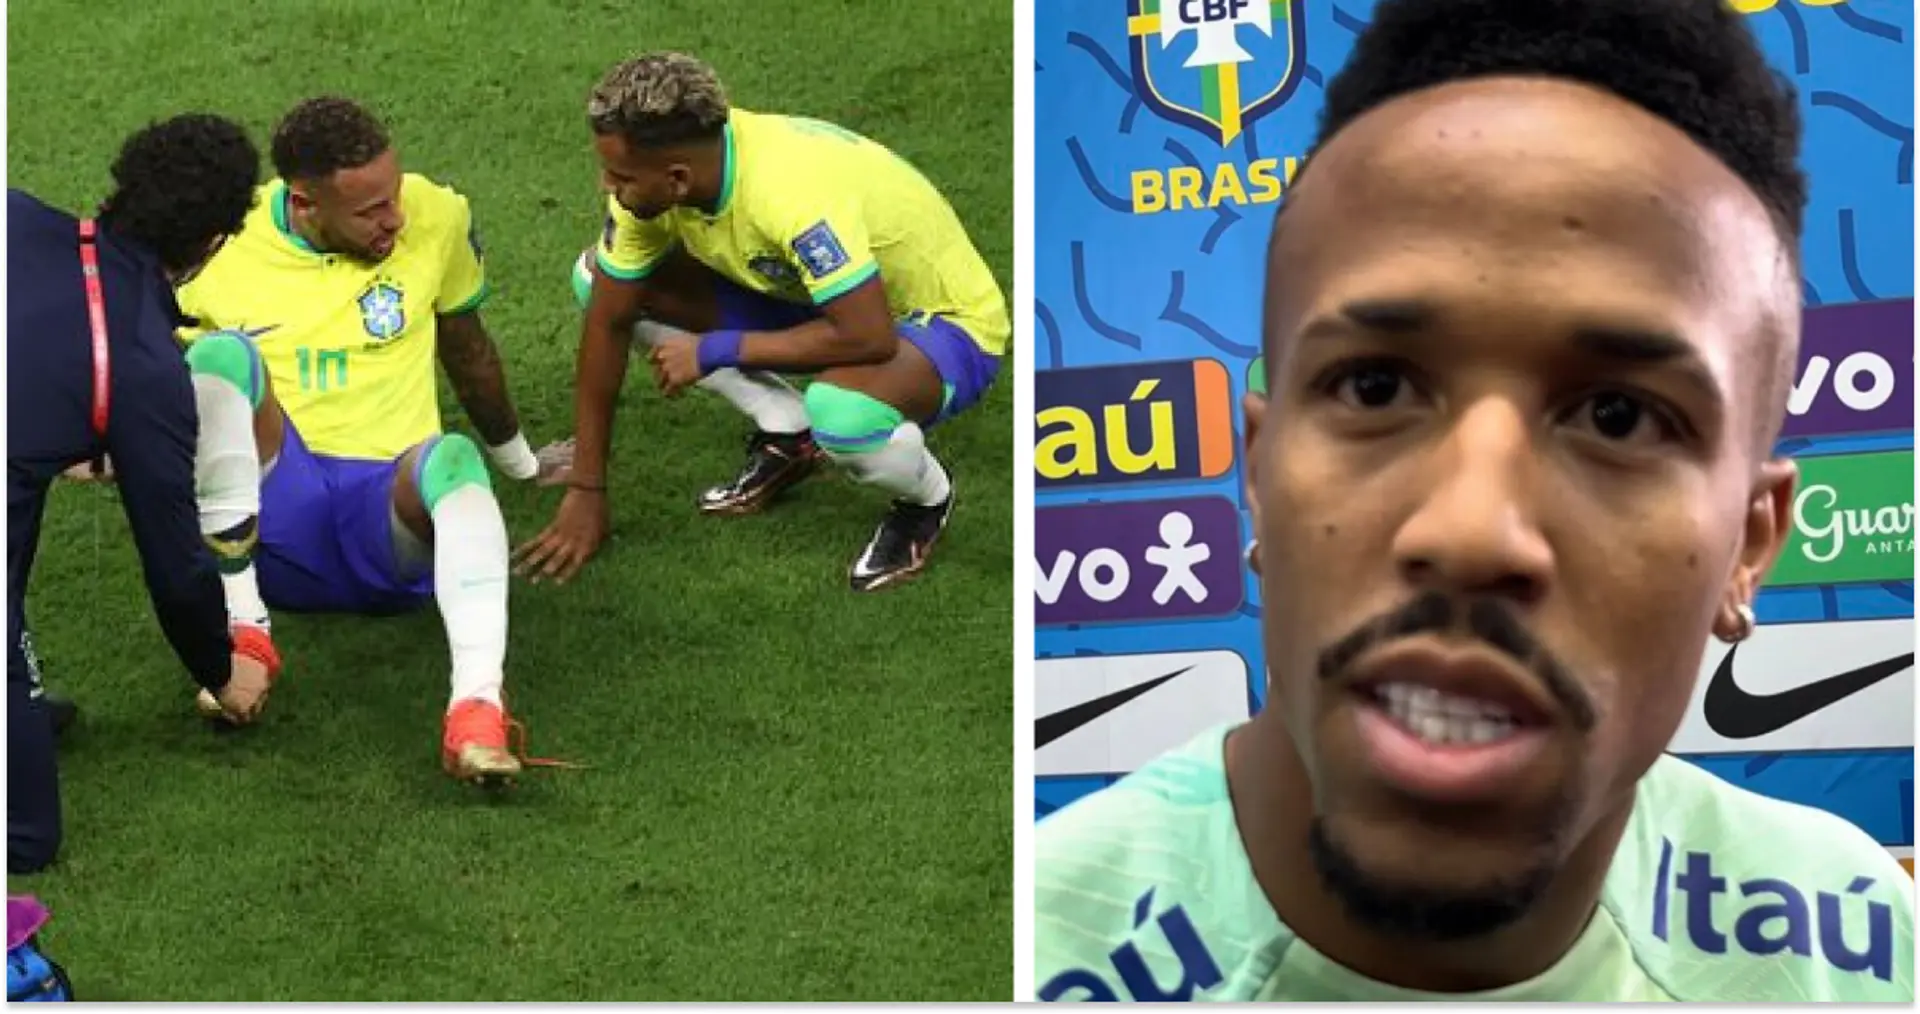 Le Brésil subit un coup dur : ce que cela signifie pour nos joueurs